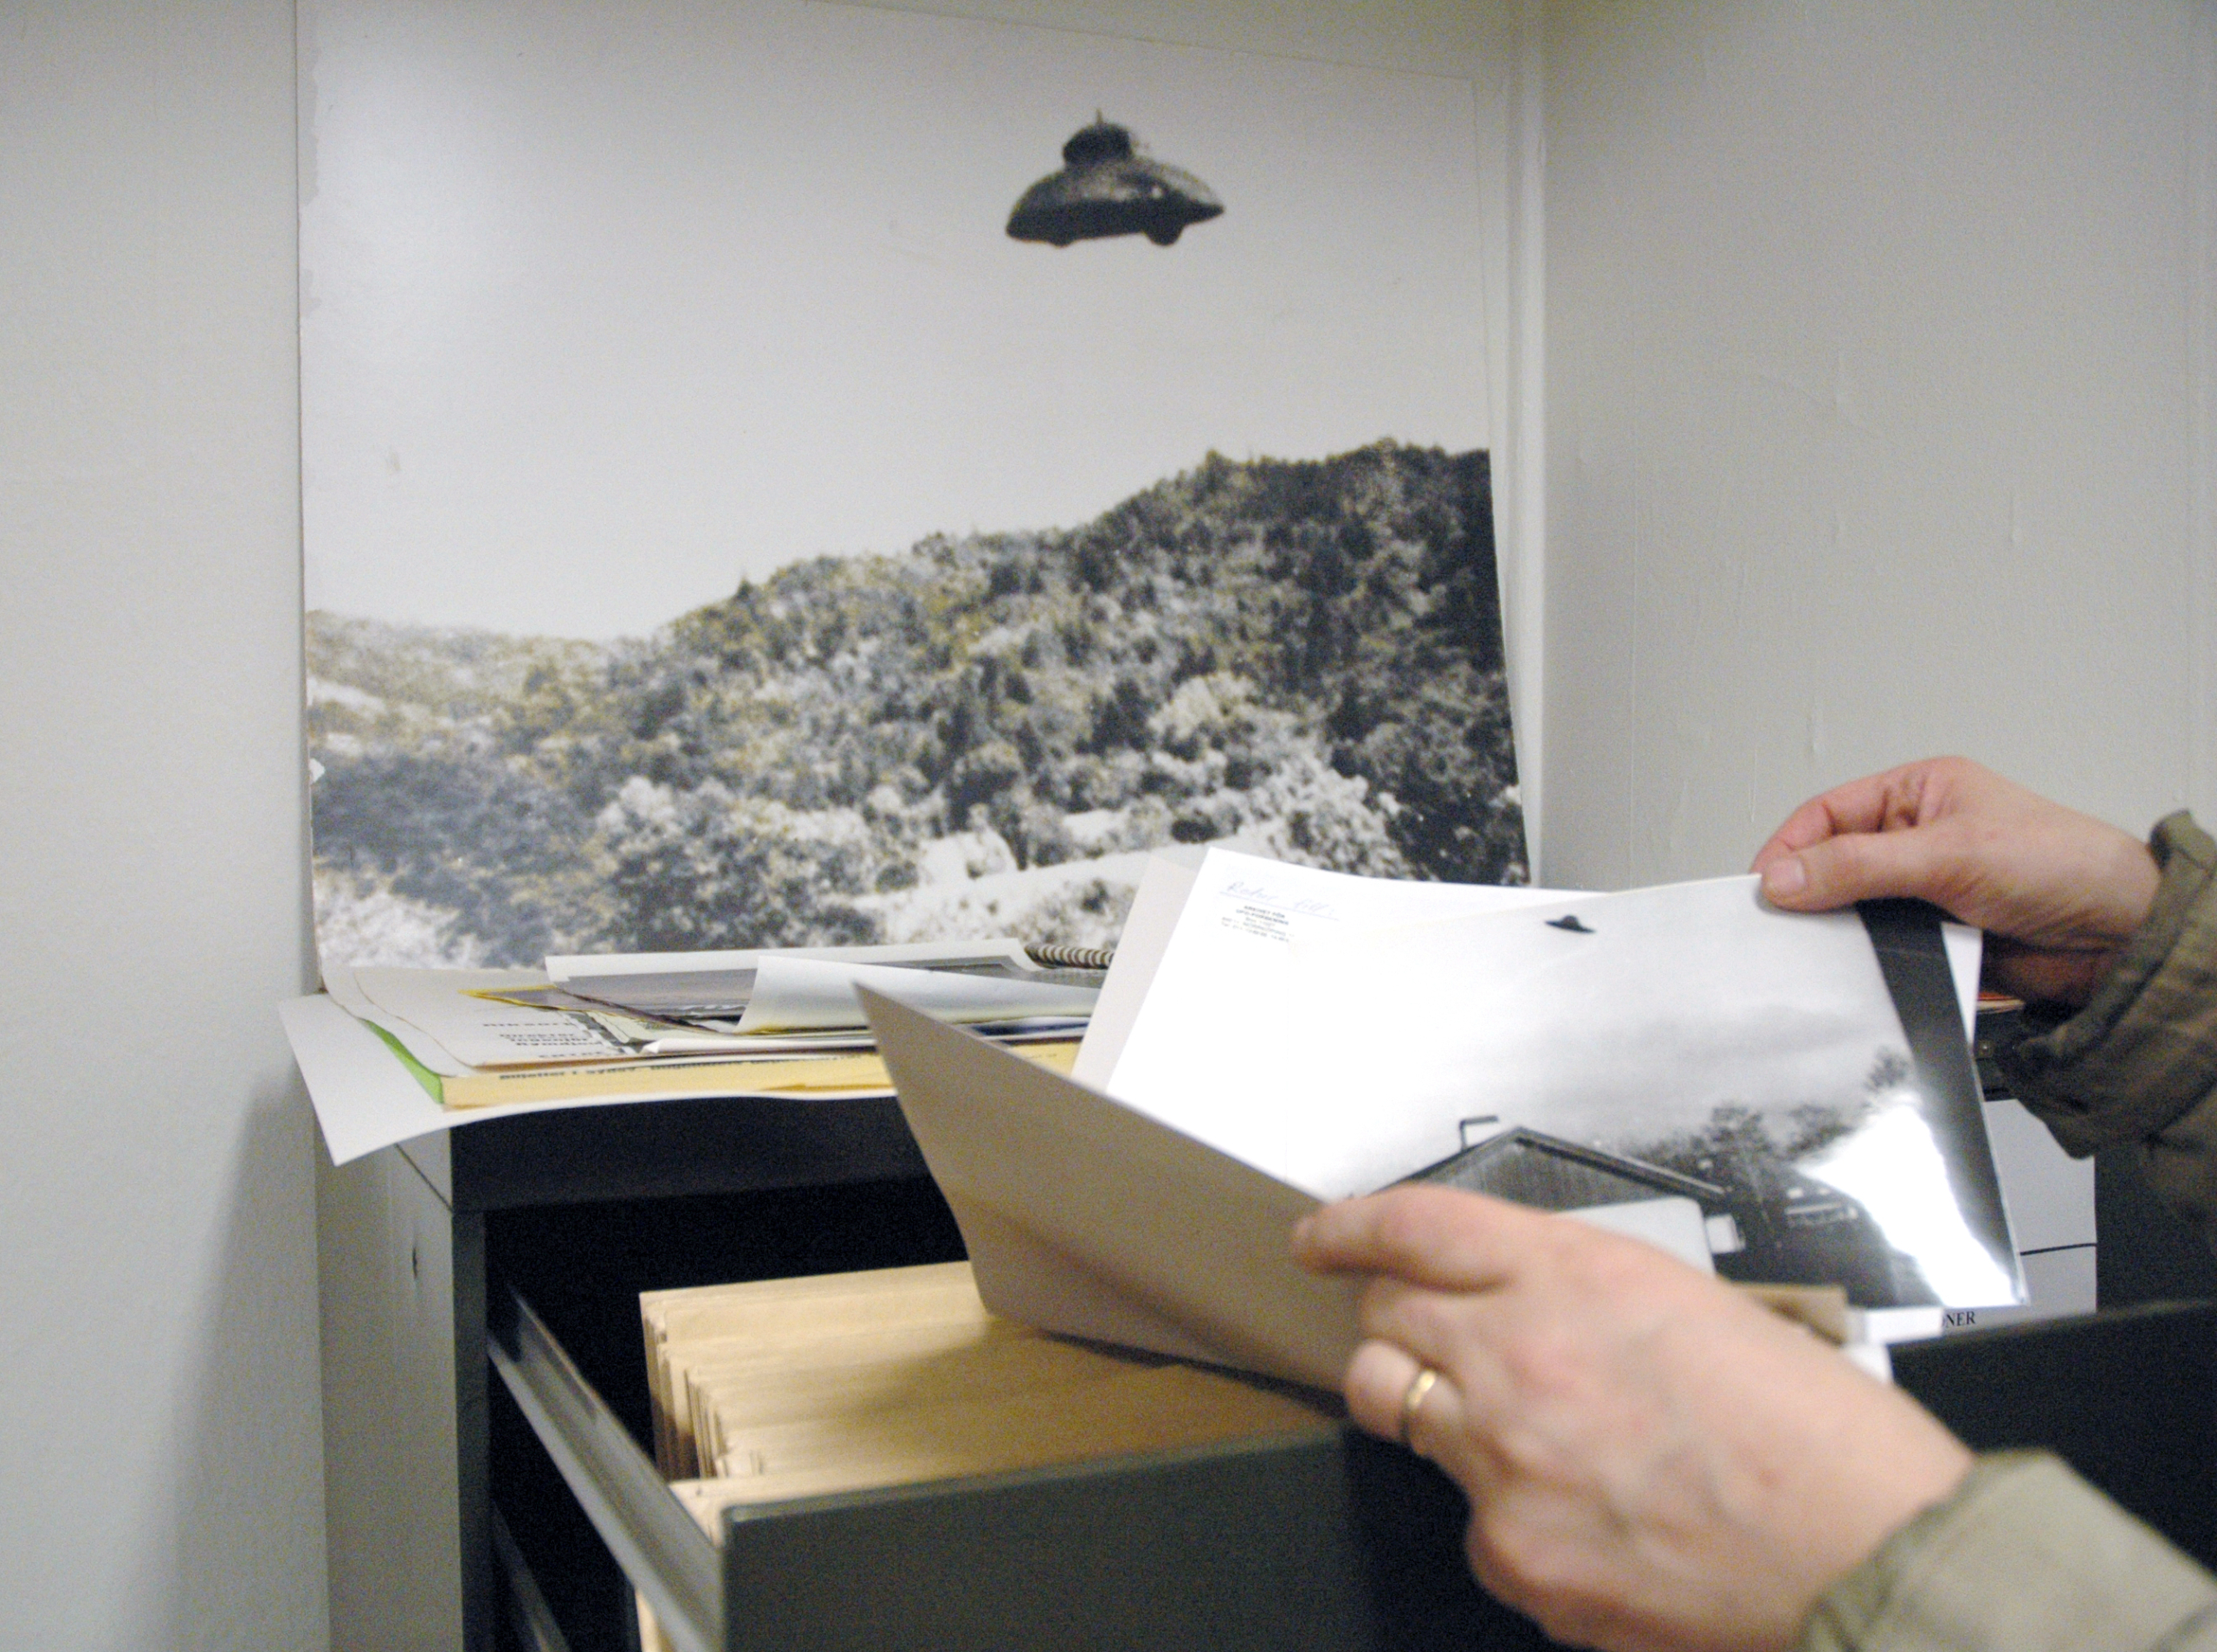 En person står i ett arkiv och bläddrar bland bilder. På väggen sitter ett fotografi som ser ut att förställa ett UFO.